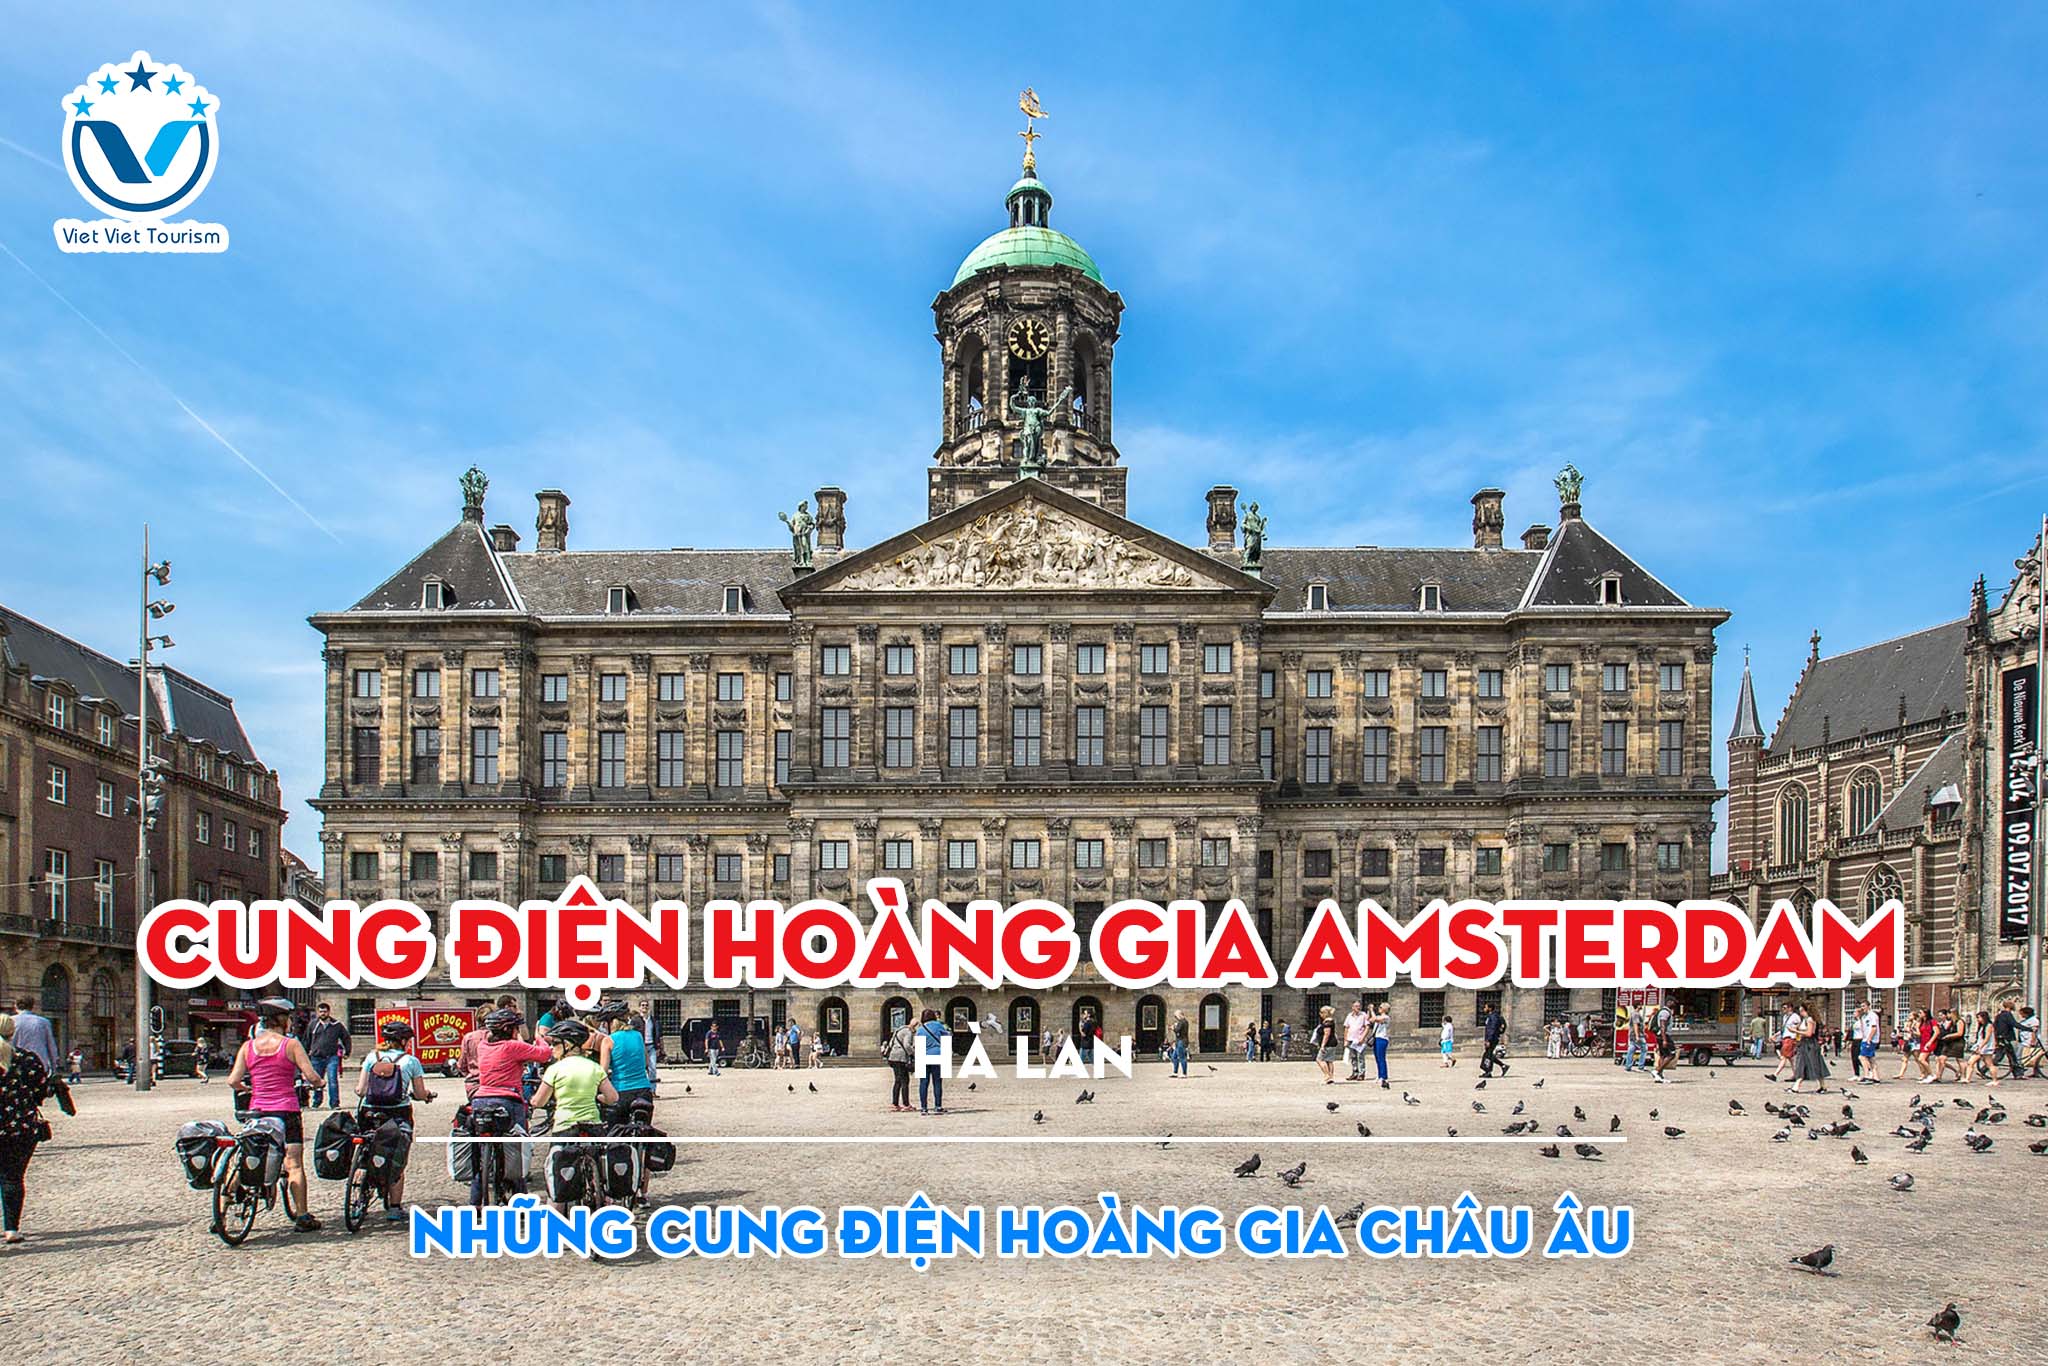 Royal Palace VVT 7. Cung điện Hoàng gia Amsterdam